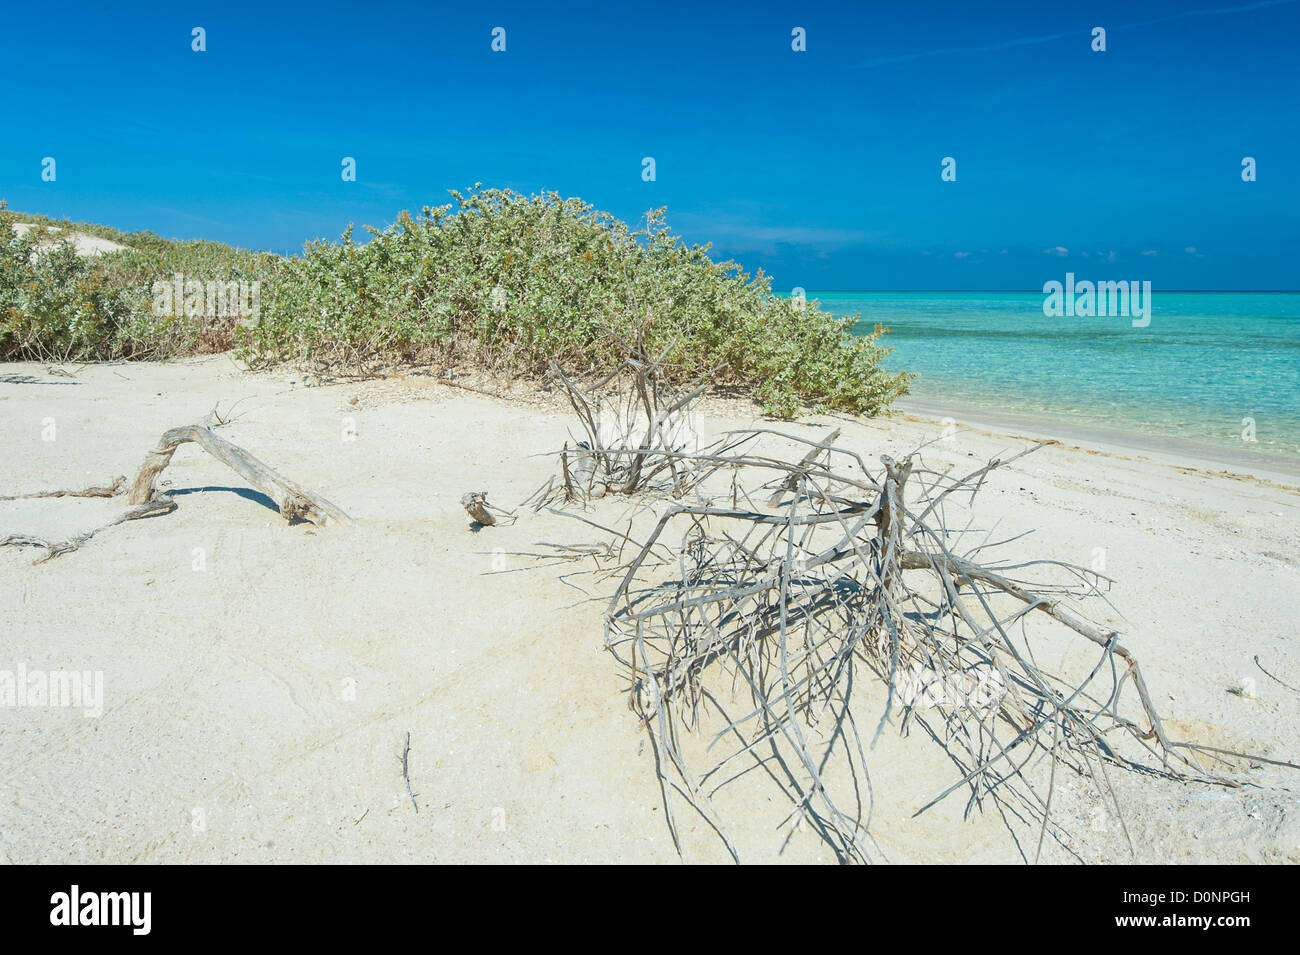 Vue d'une belle plage tropicale sur une île déserte avec des buissons Banque D'Images